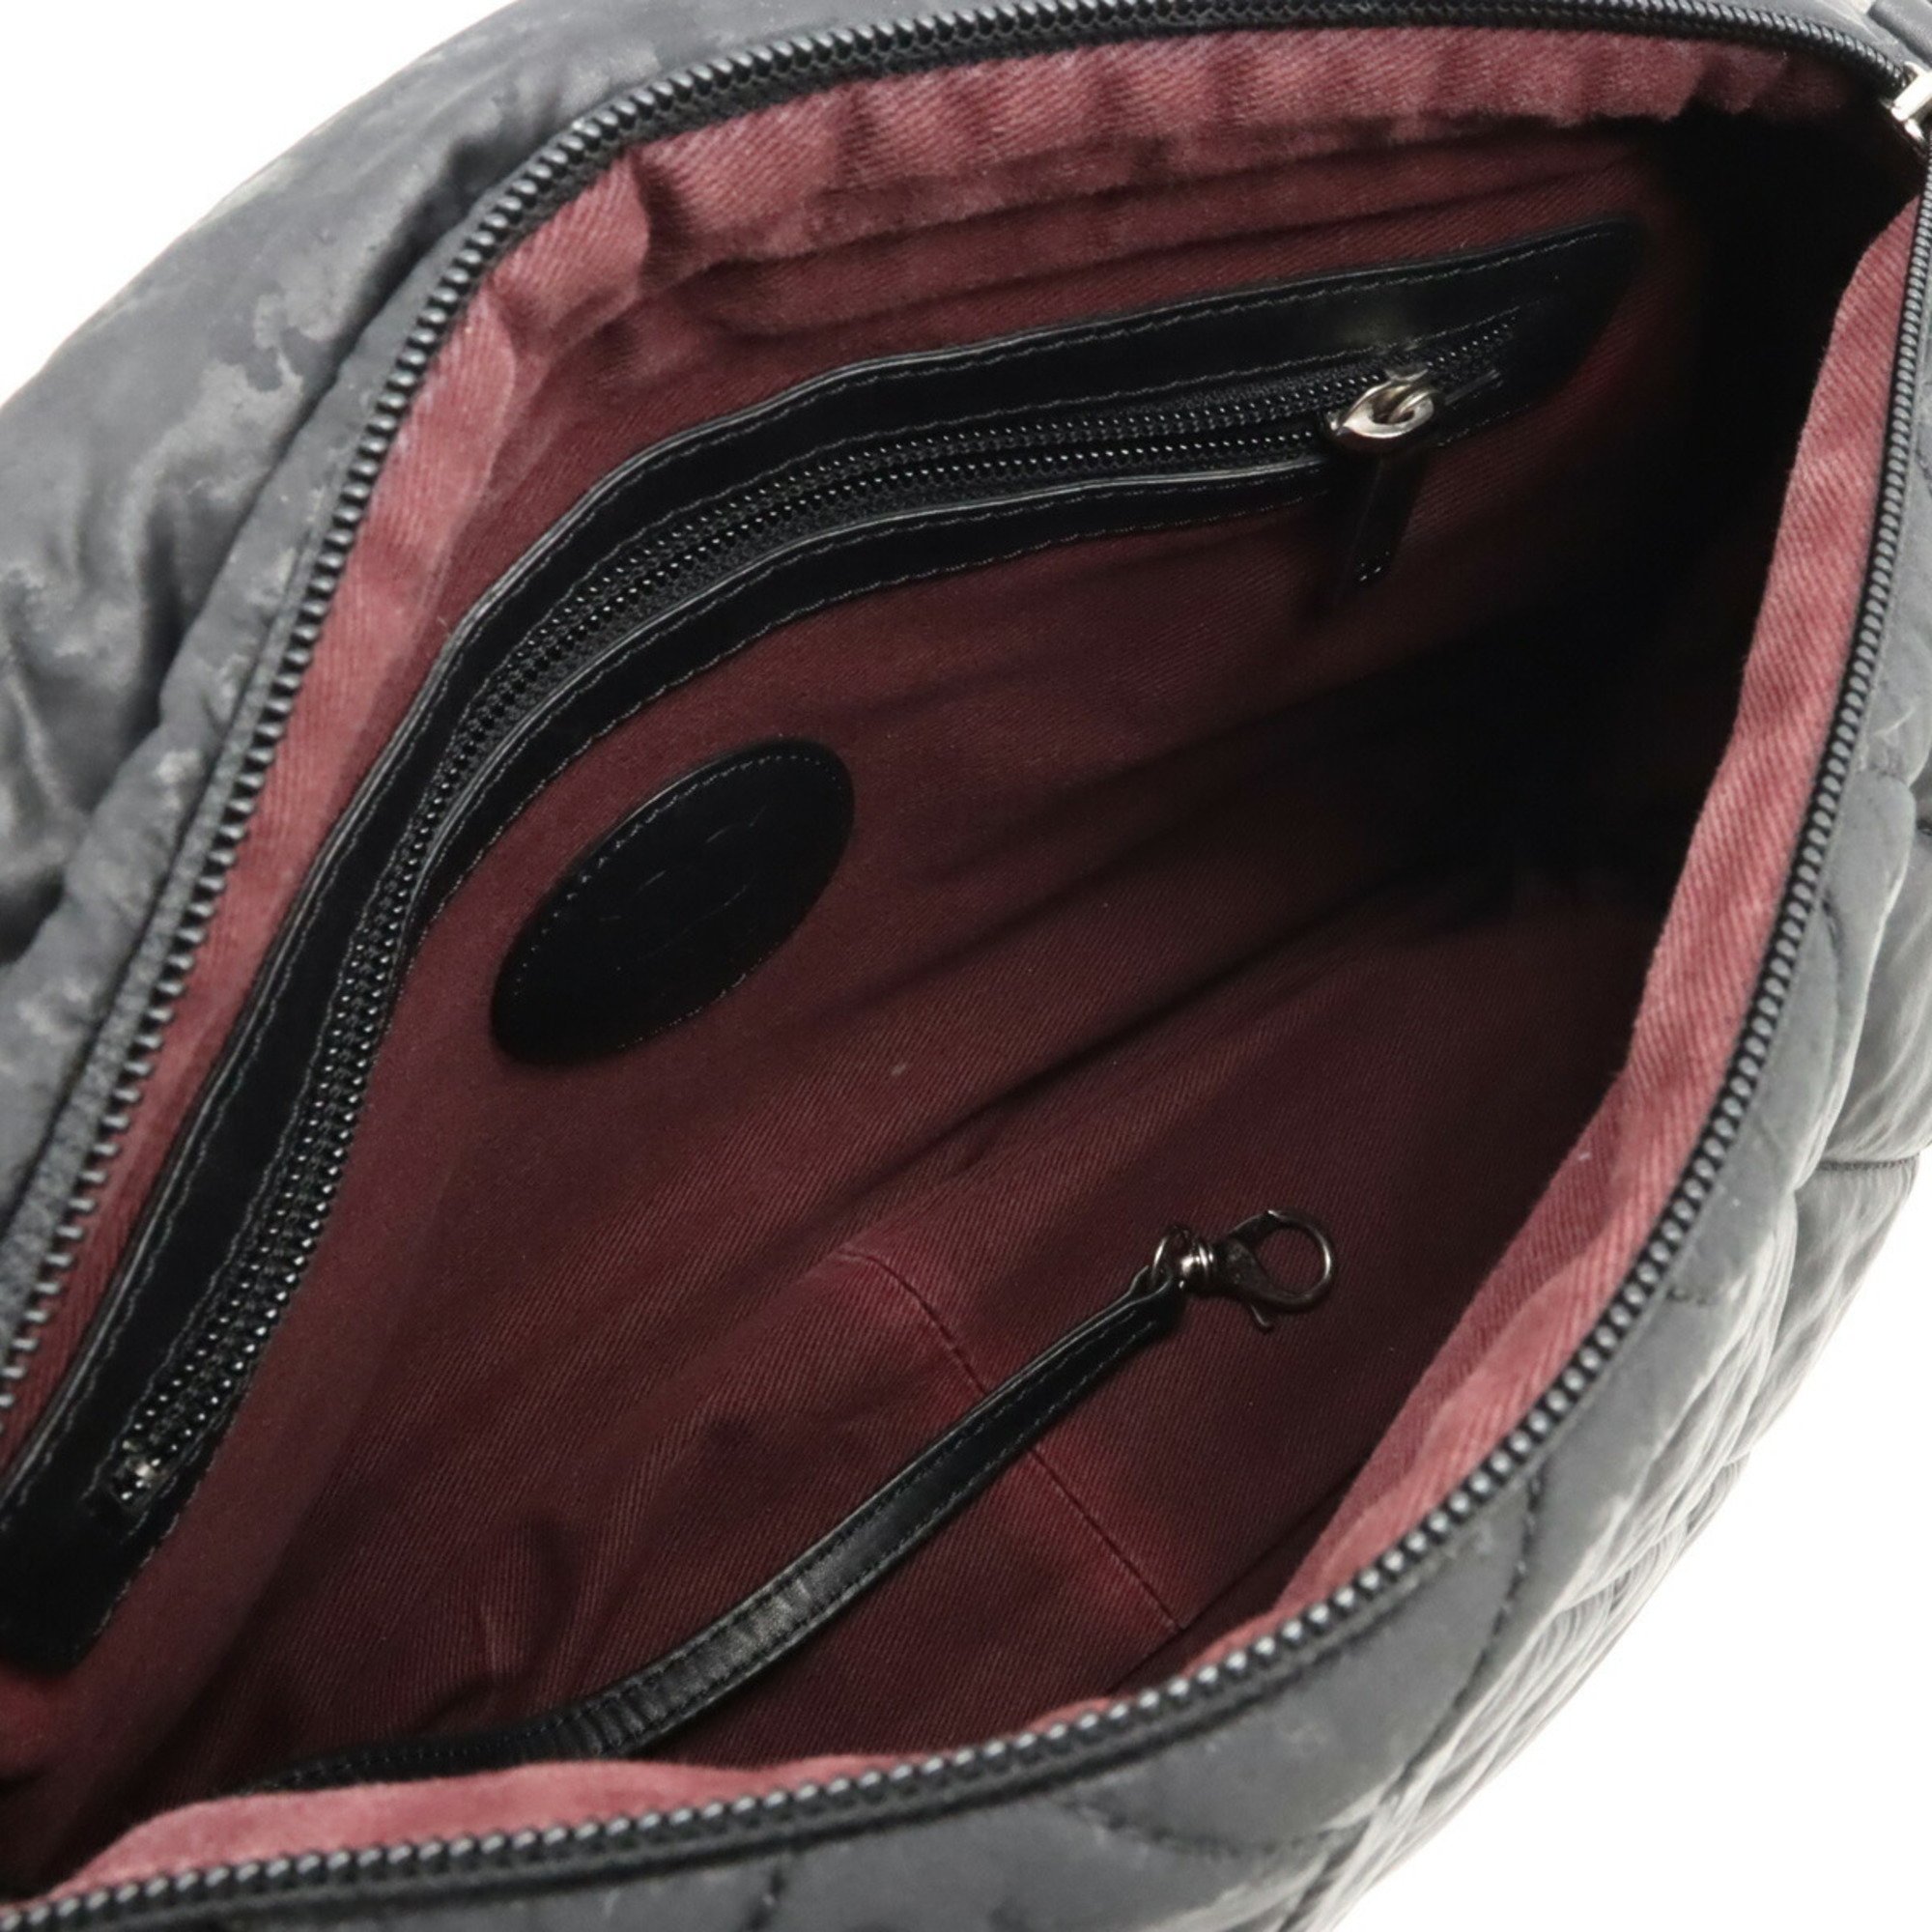 CHANEL Matelasse Shoulder Bag, Coated Nylon, Leather, Black